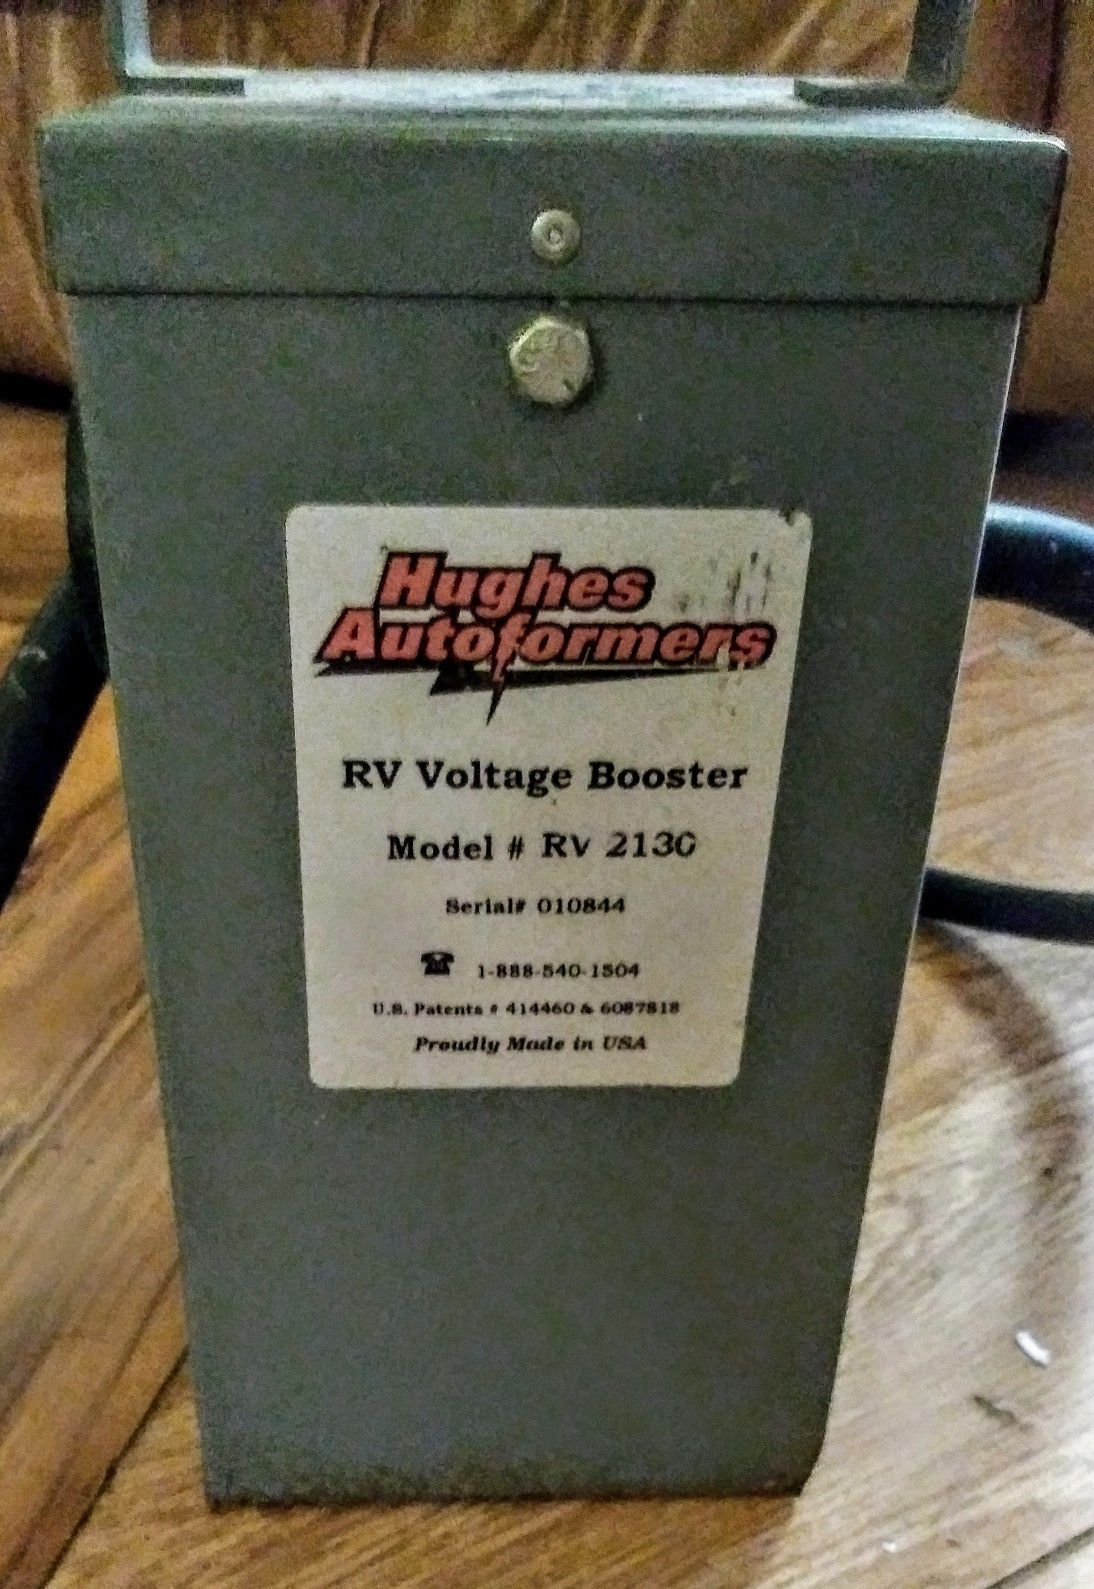 RV voltage booster